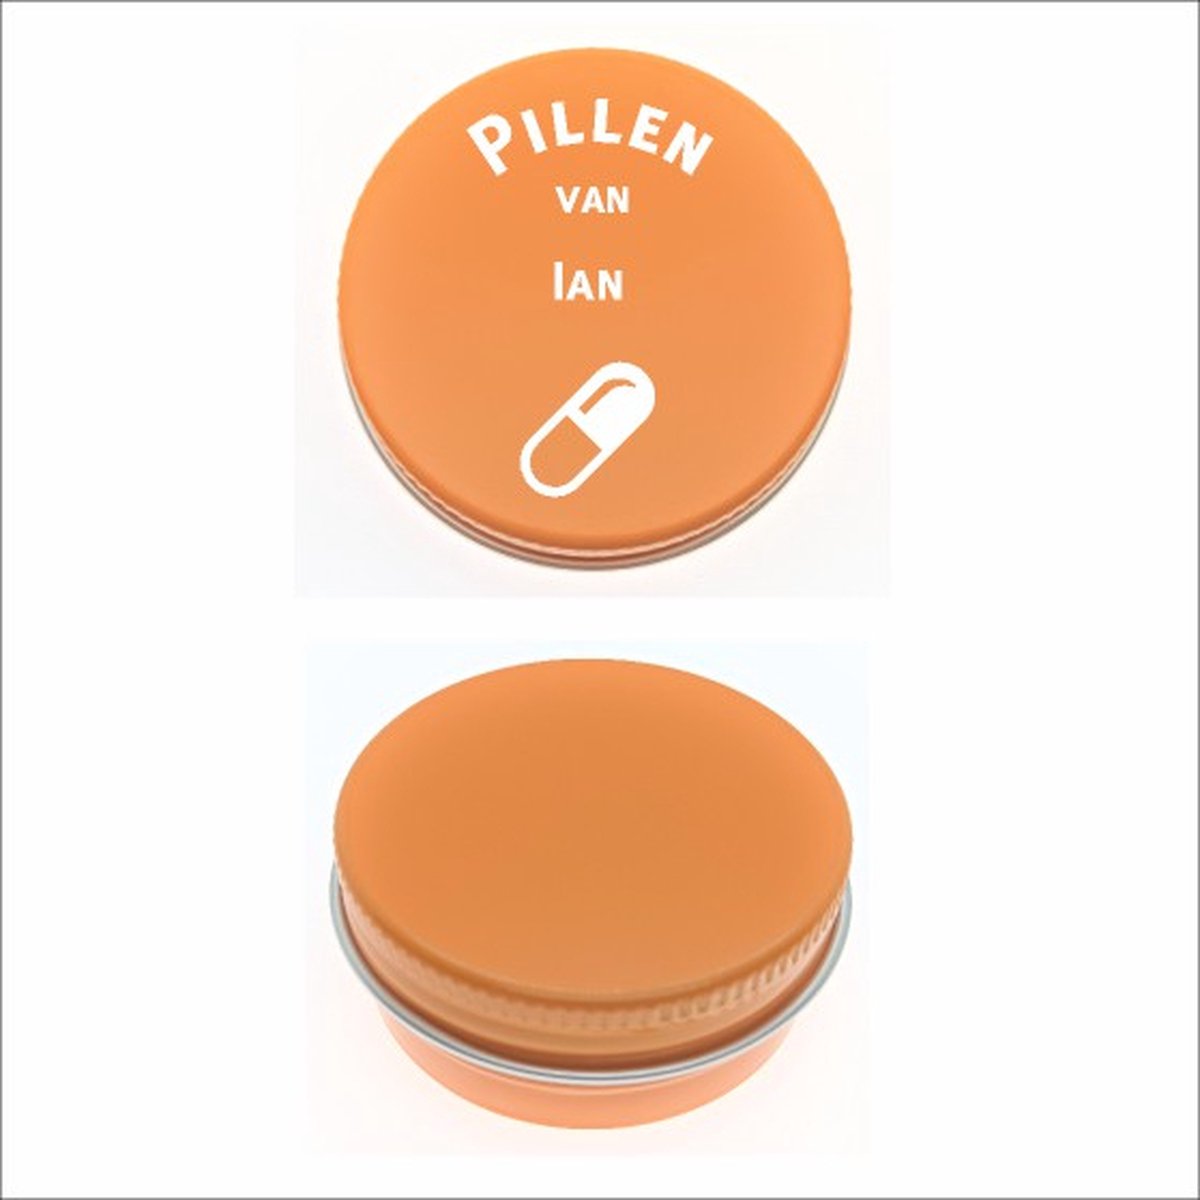 Pillen Blikje Met Naam Gravering - Ian